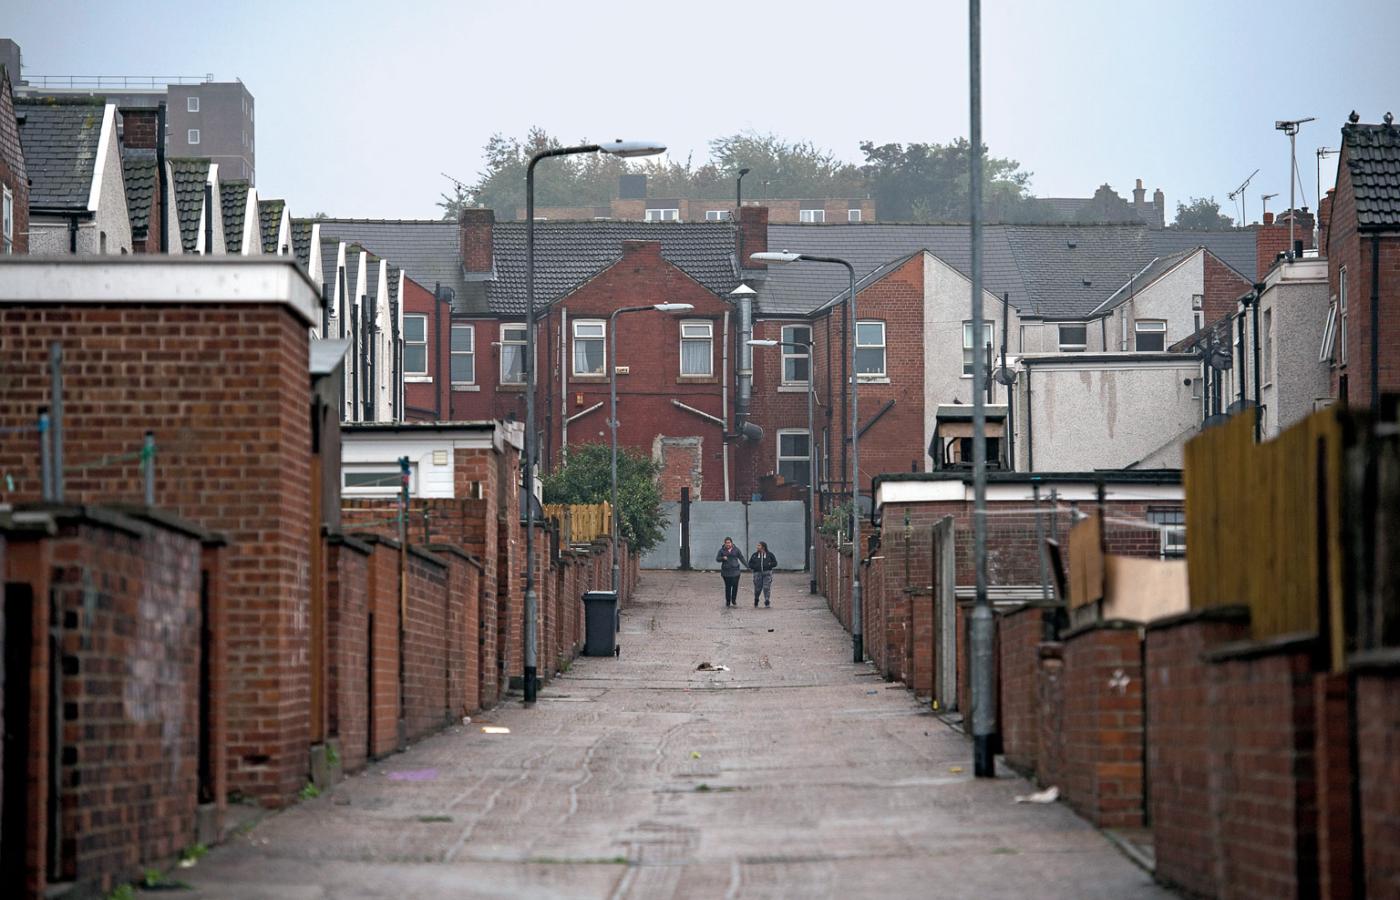 Co drugie gospodarstwo domowe w Rotherham zalicza się do najuboższych w Wielkiej Brytanii.